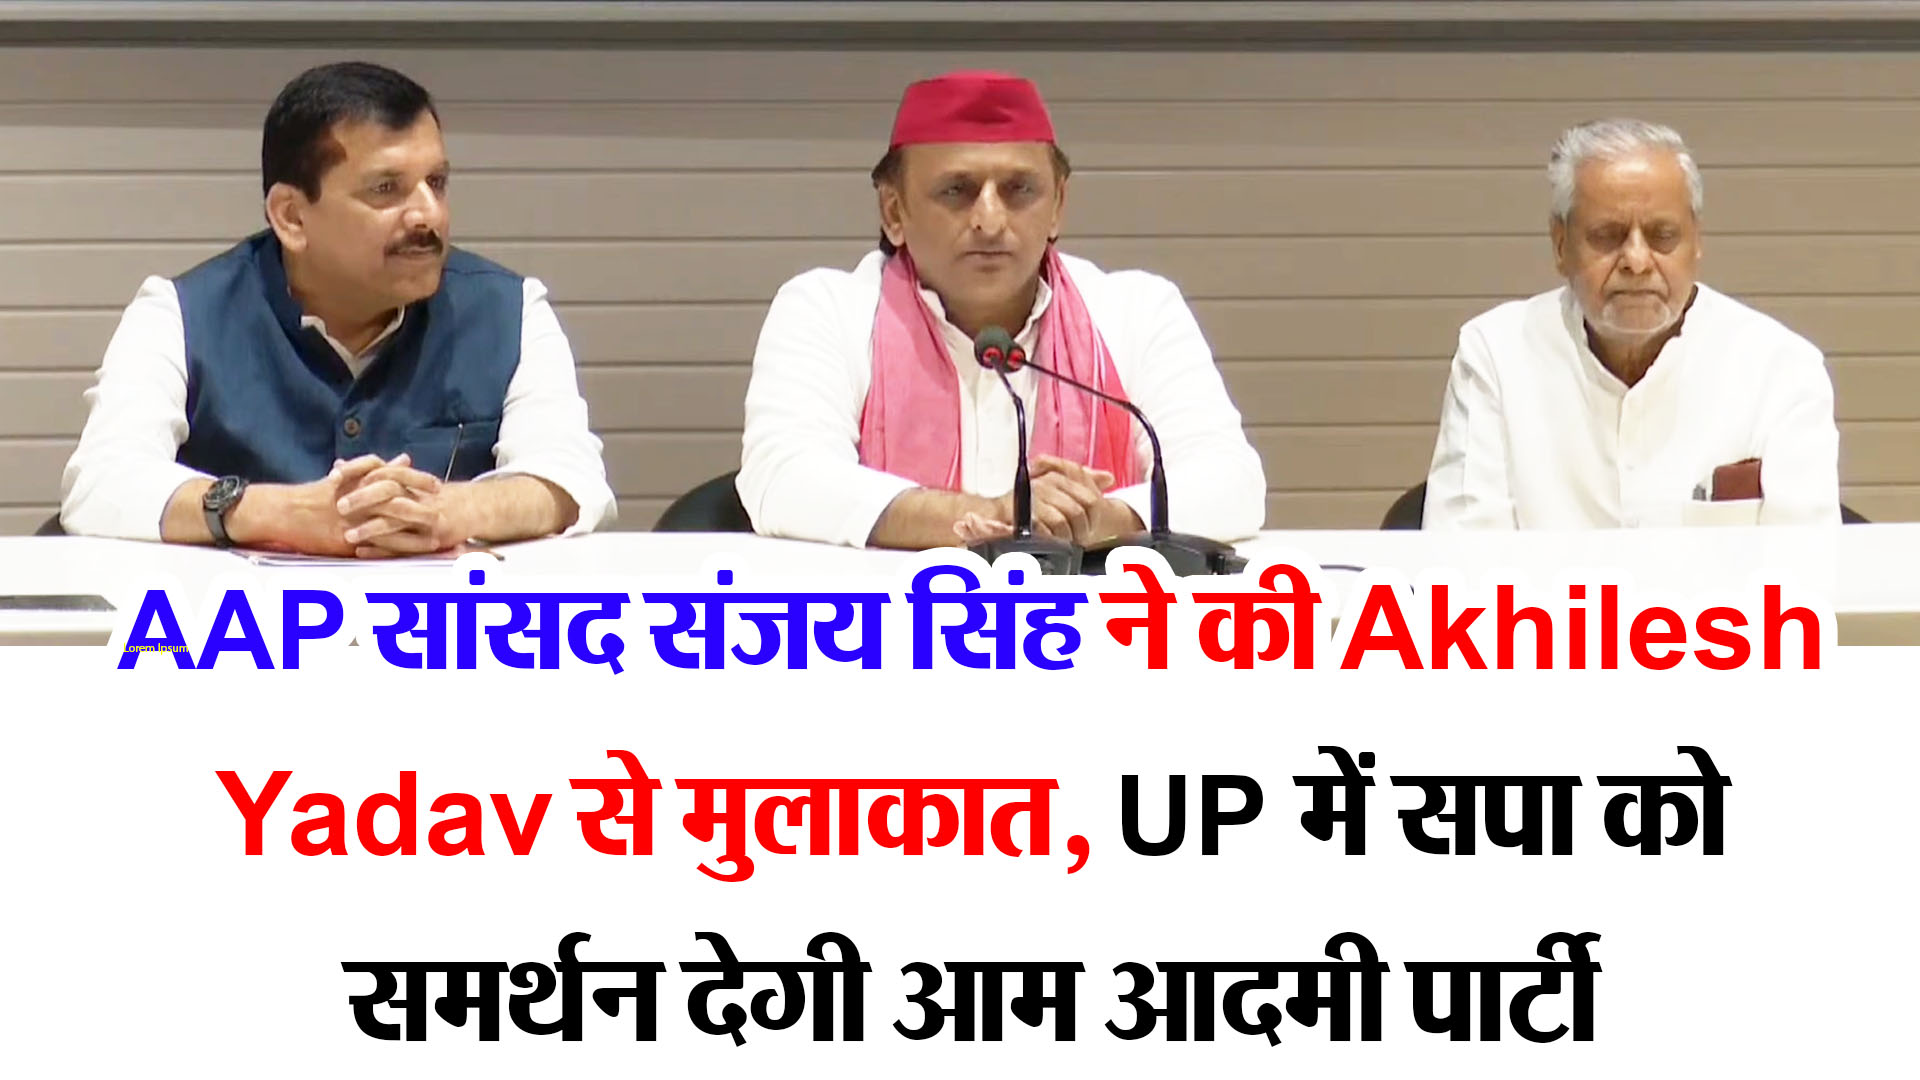 लखनऊ: AAP सांसद संजय सिंह ने की Akhilesh Yadav से मुलाकात, UP में सपा को समर्थन देगी आम आदमी पार्टी